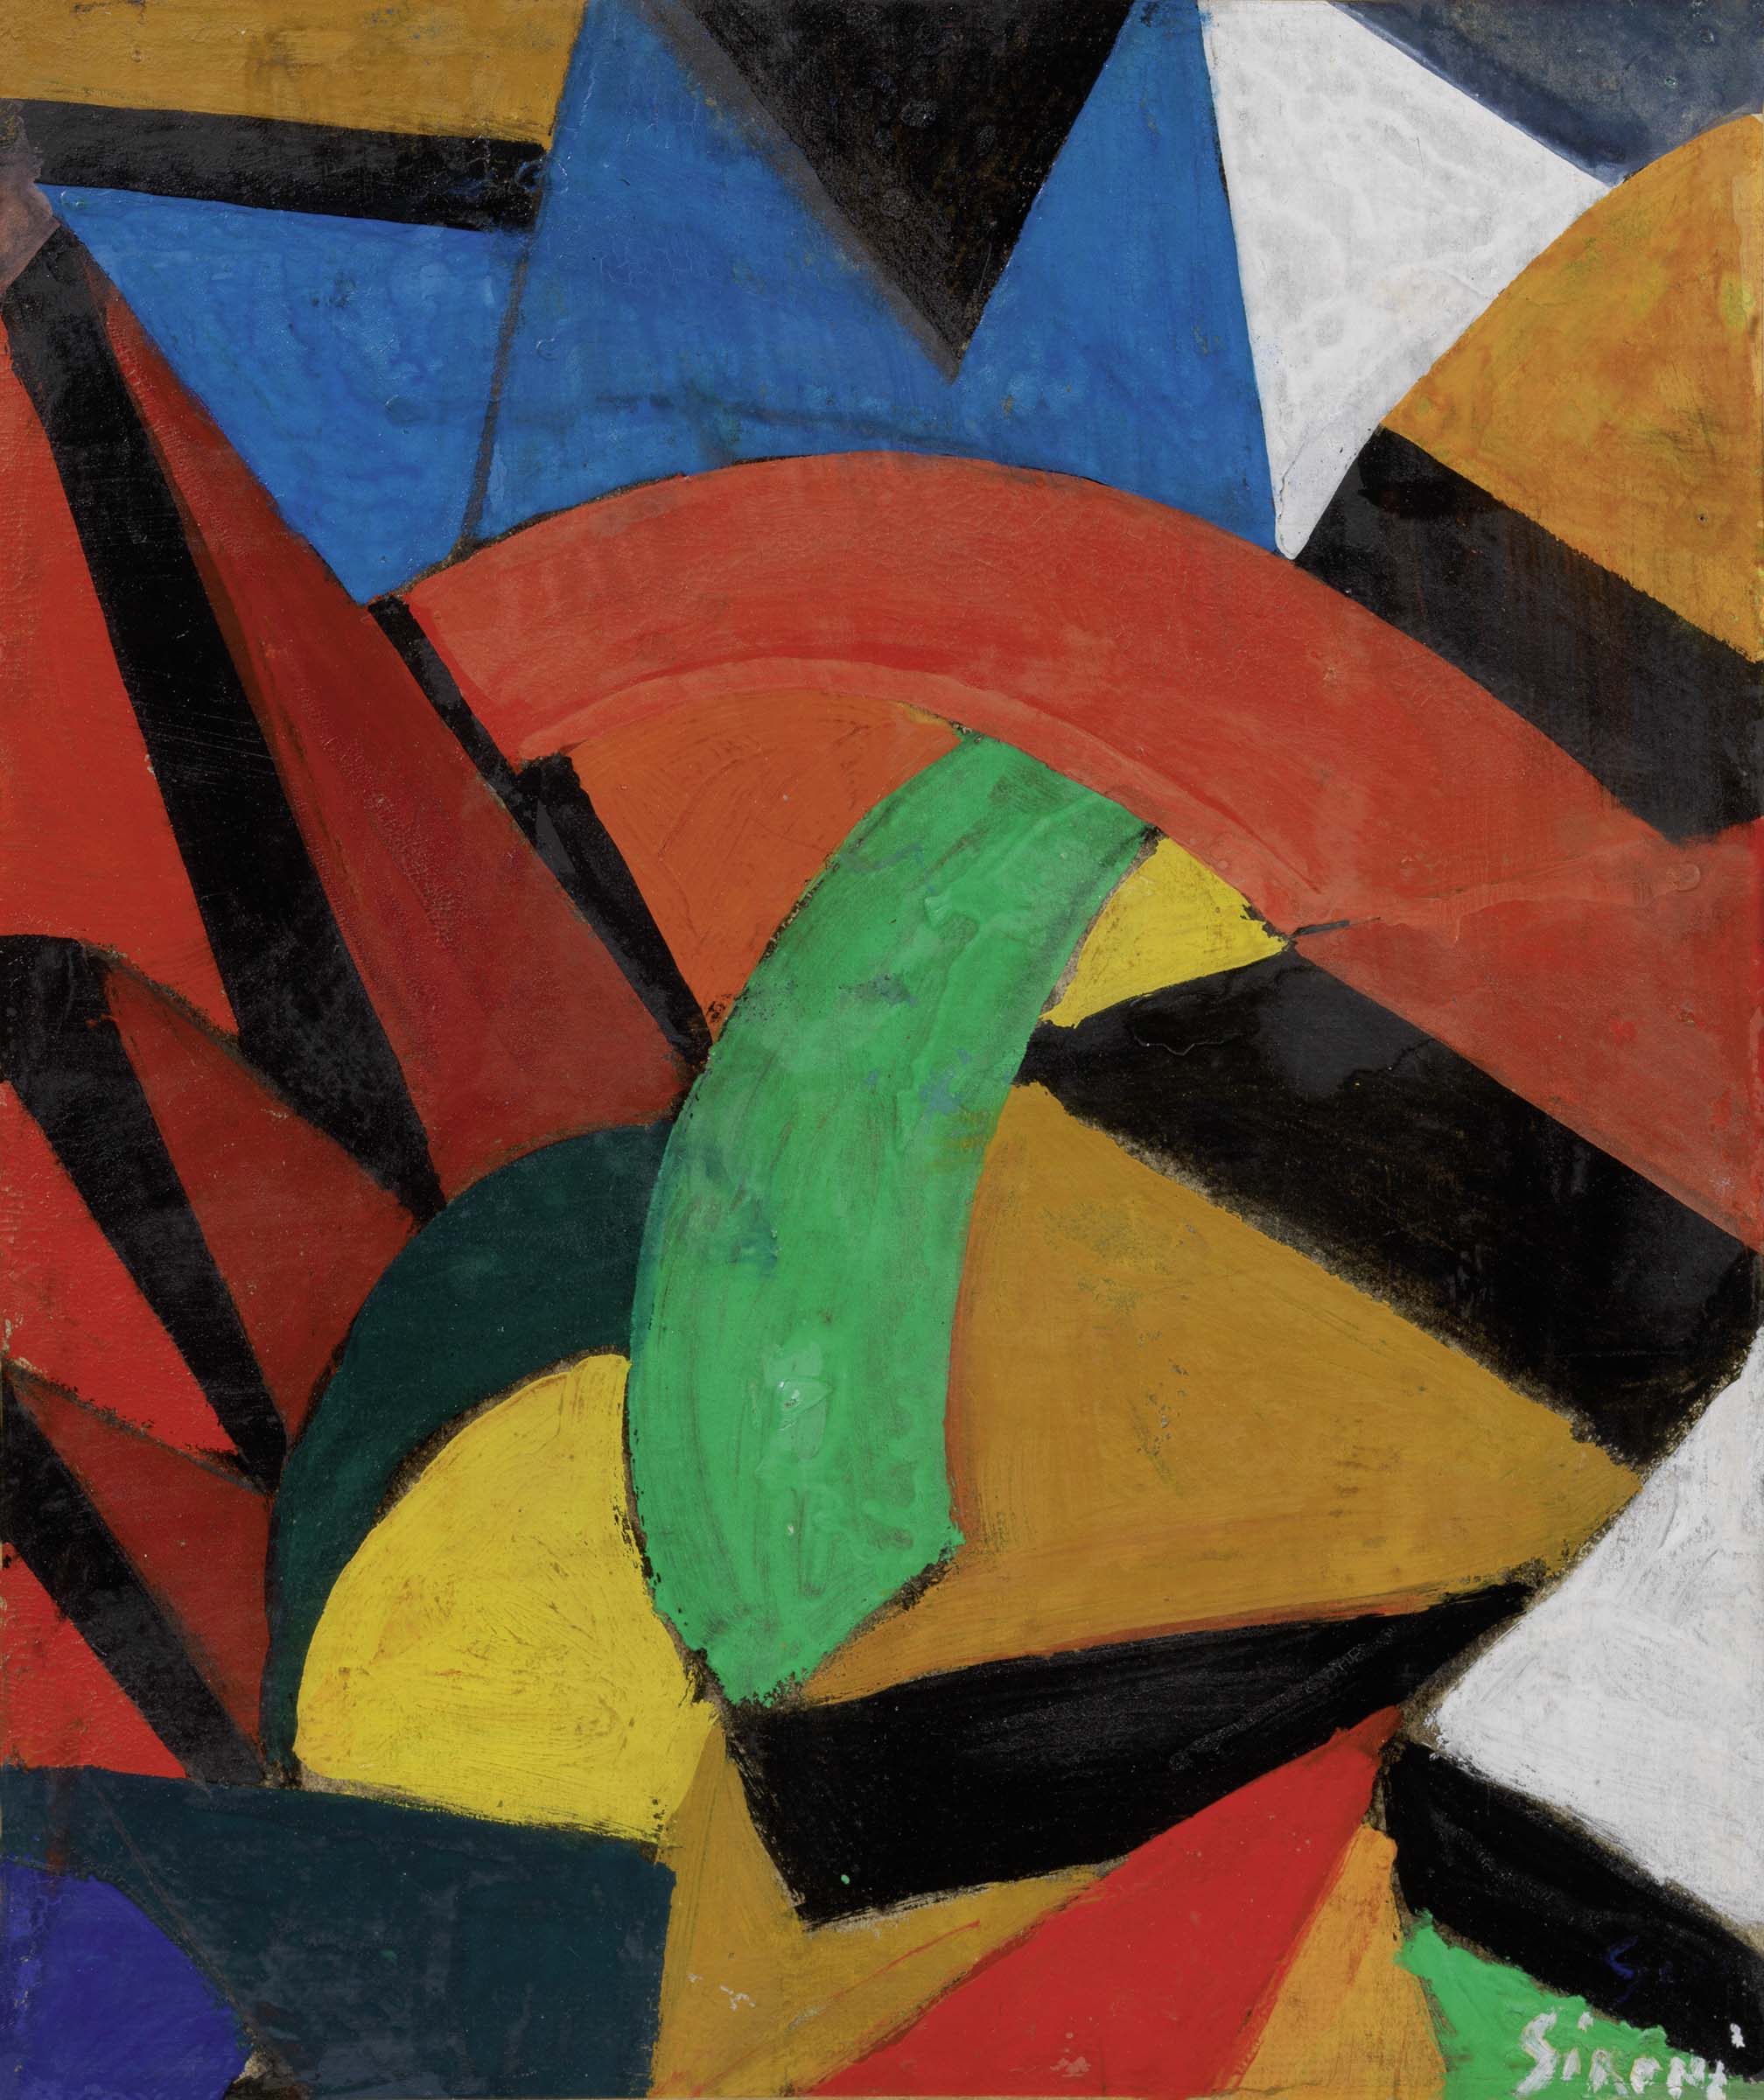 LOTTO 621 - Mario Sironi, Composizione Futurista, 1915 ca.Tempera, olio e matita grassa su carta applicata su tela, cm. 28x23,7. STIMA € 40.000 / 60.000